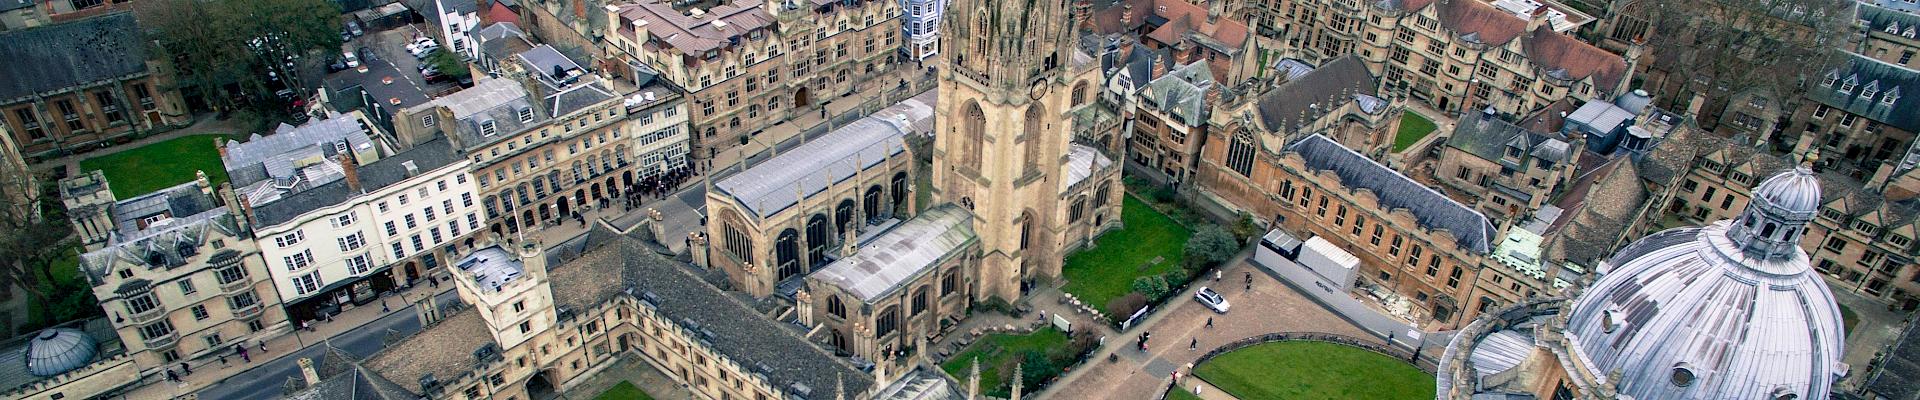 Oxford : Un séjour linguistique au coeur de l'université anglaise